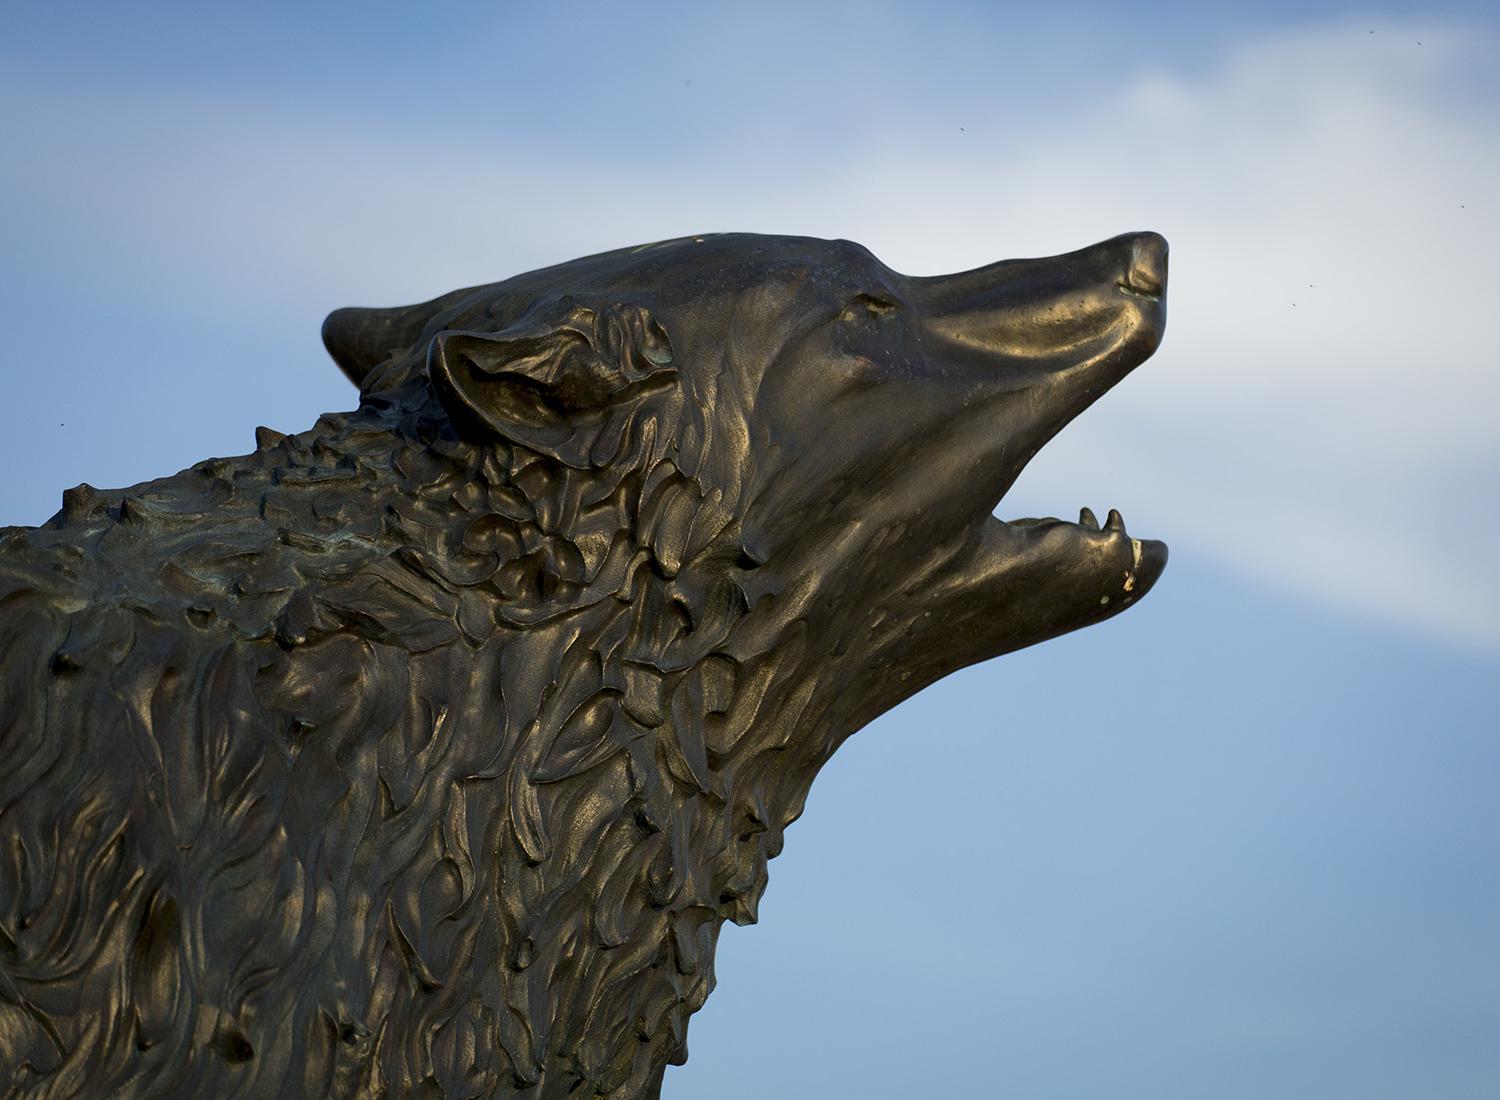 澳门新普京注册在体育场的狼雕像 